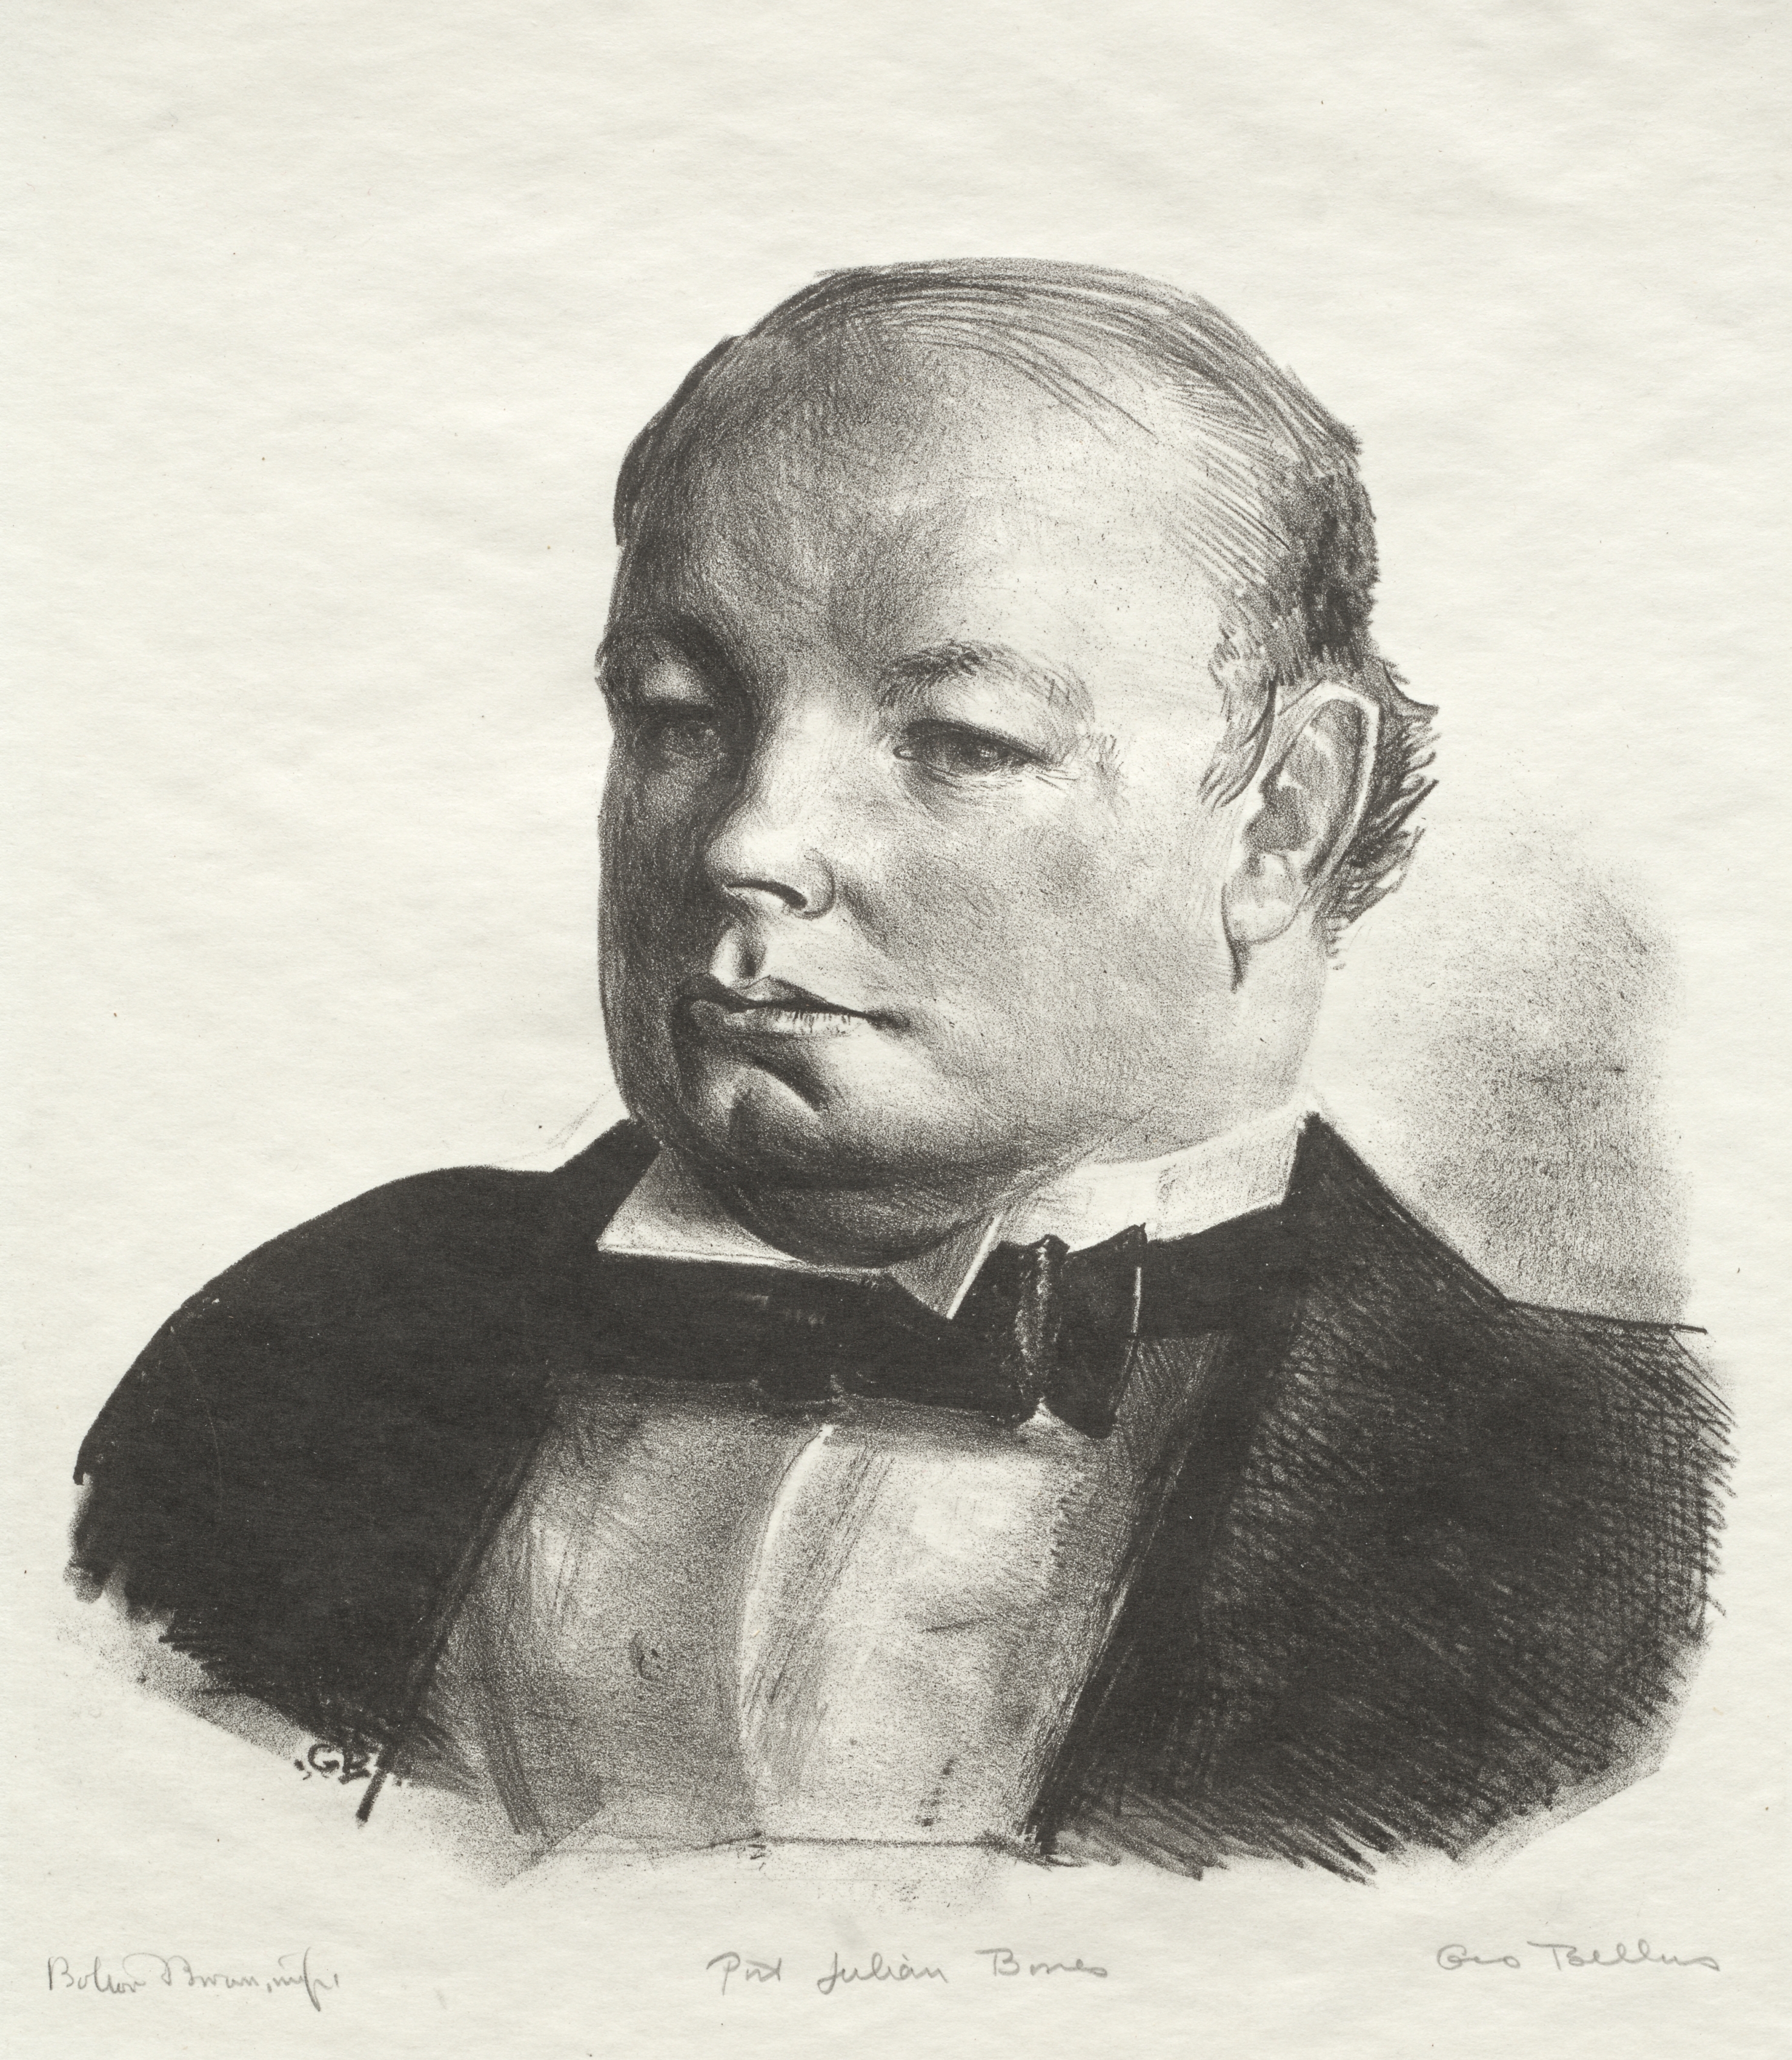 Portrait of Julian Bowes
